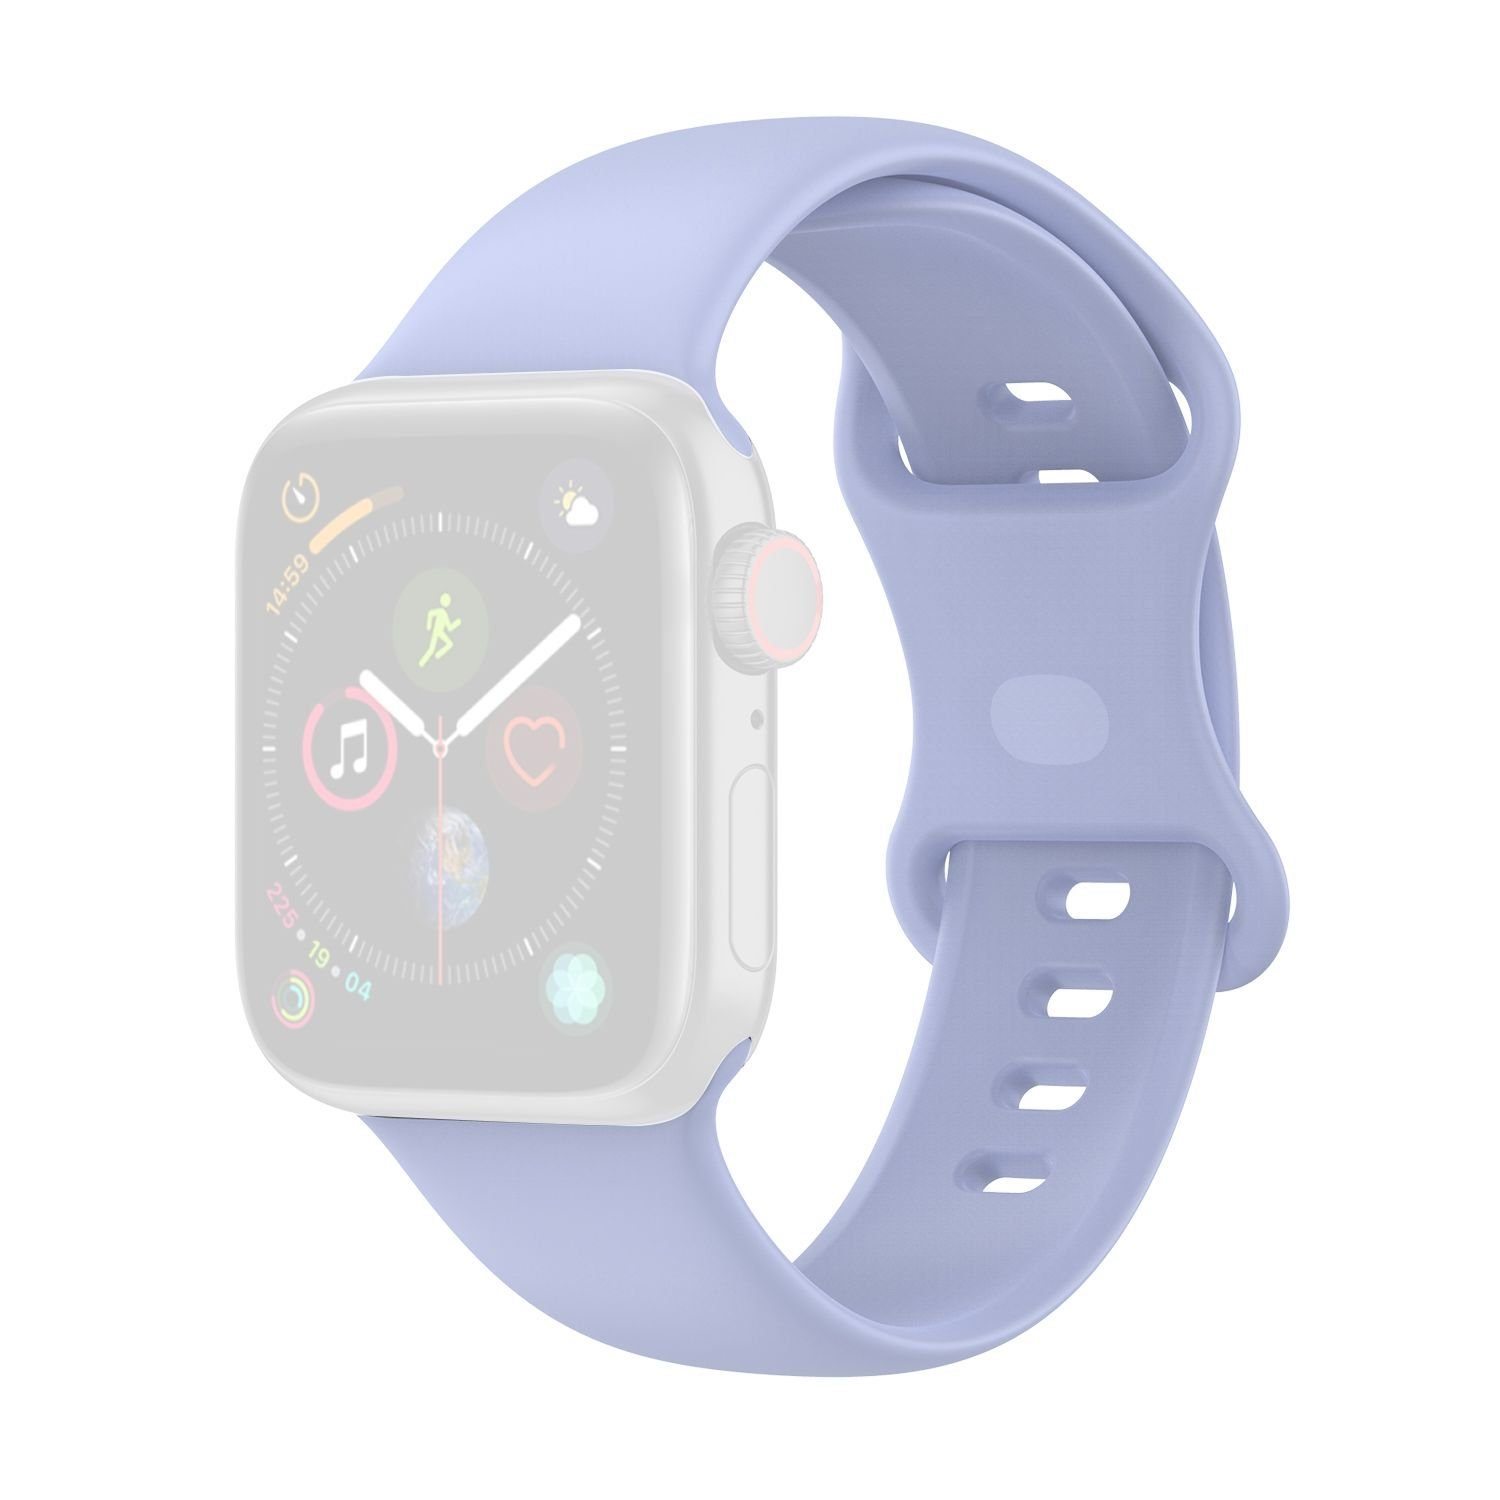 König Design Smartwatch-Armband Apple Watch Series 1/2/3/4/5/6/SE 44-42mm, Apple  Watch Series 1 / 2 / 3 / 4 / 5 / 6 / SE 44-42mm Ersatz Sportarmband Violett